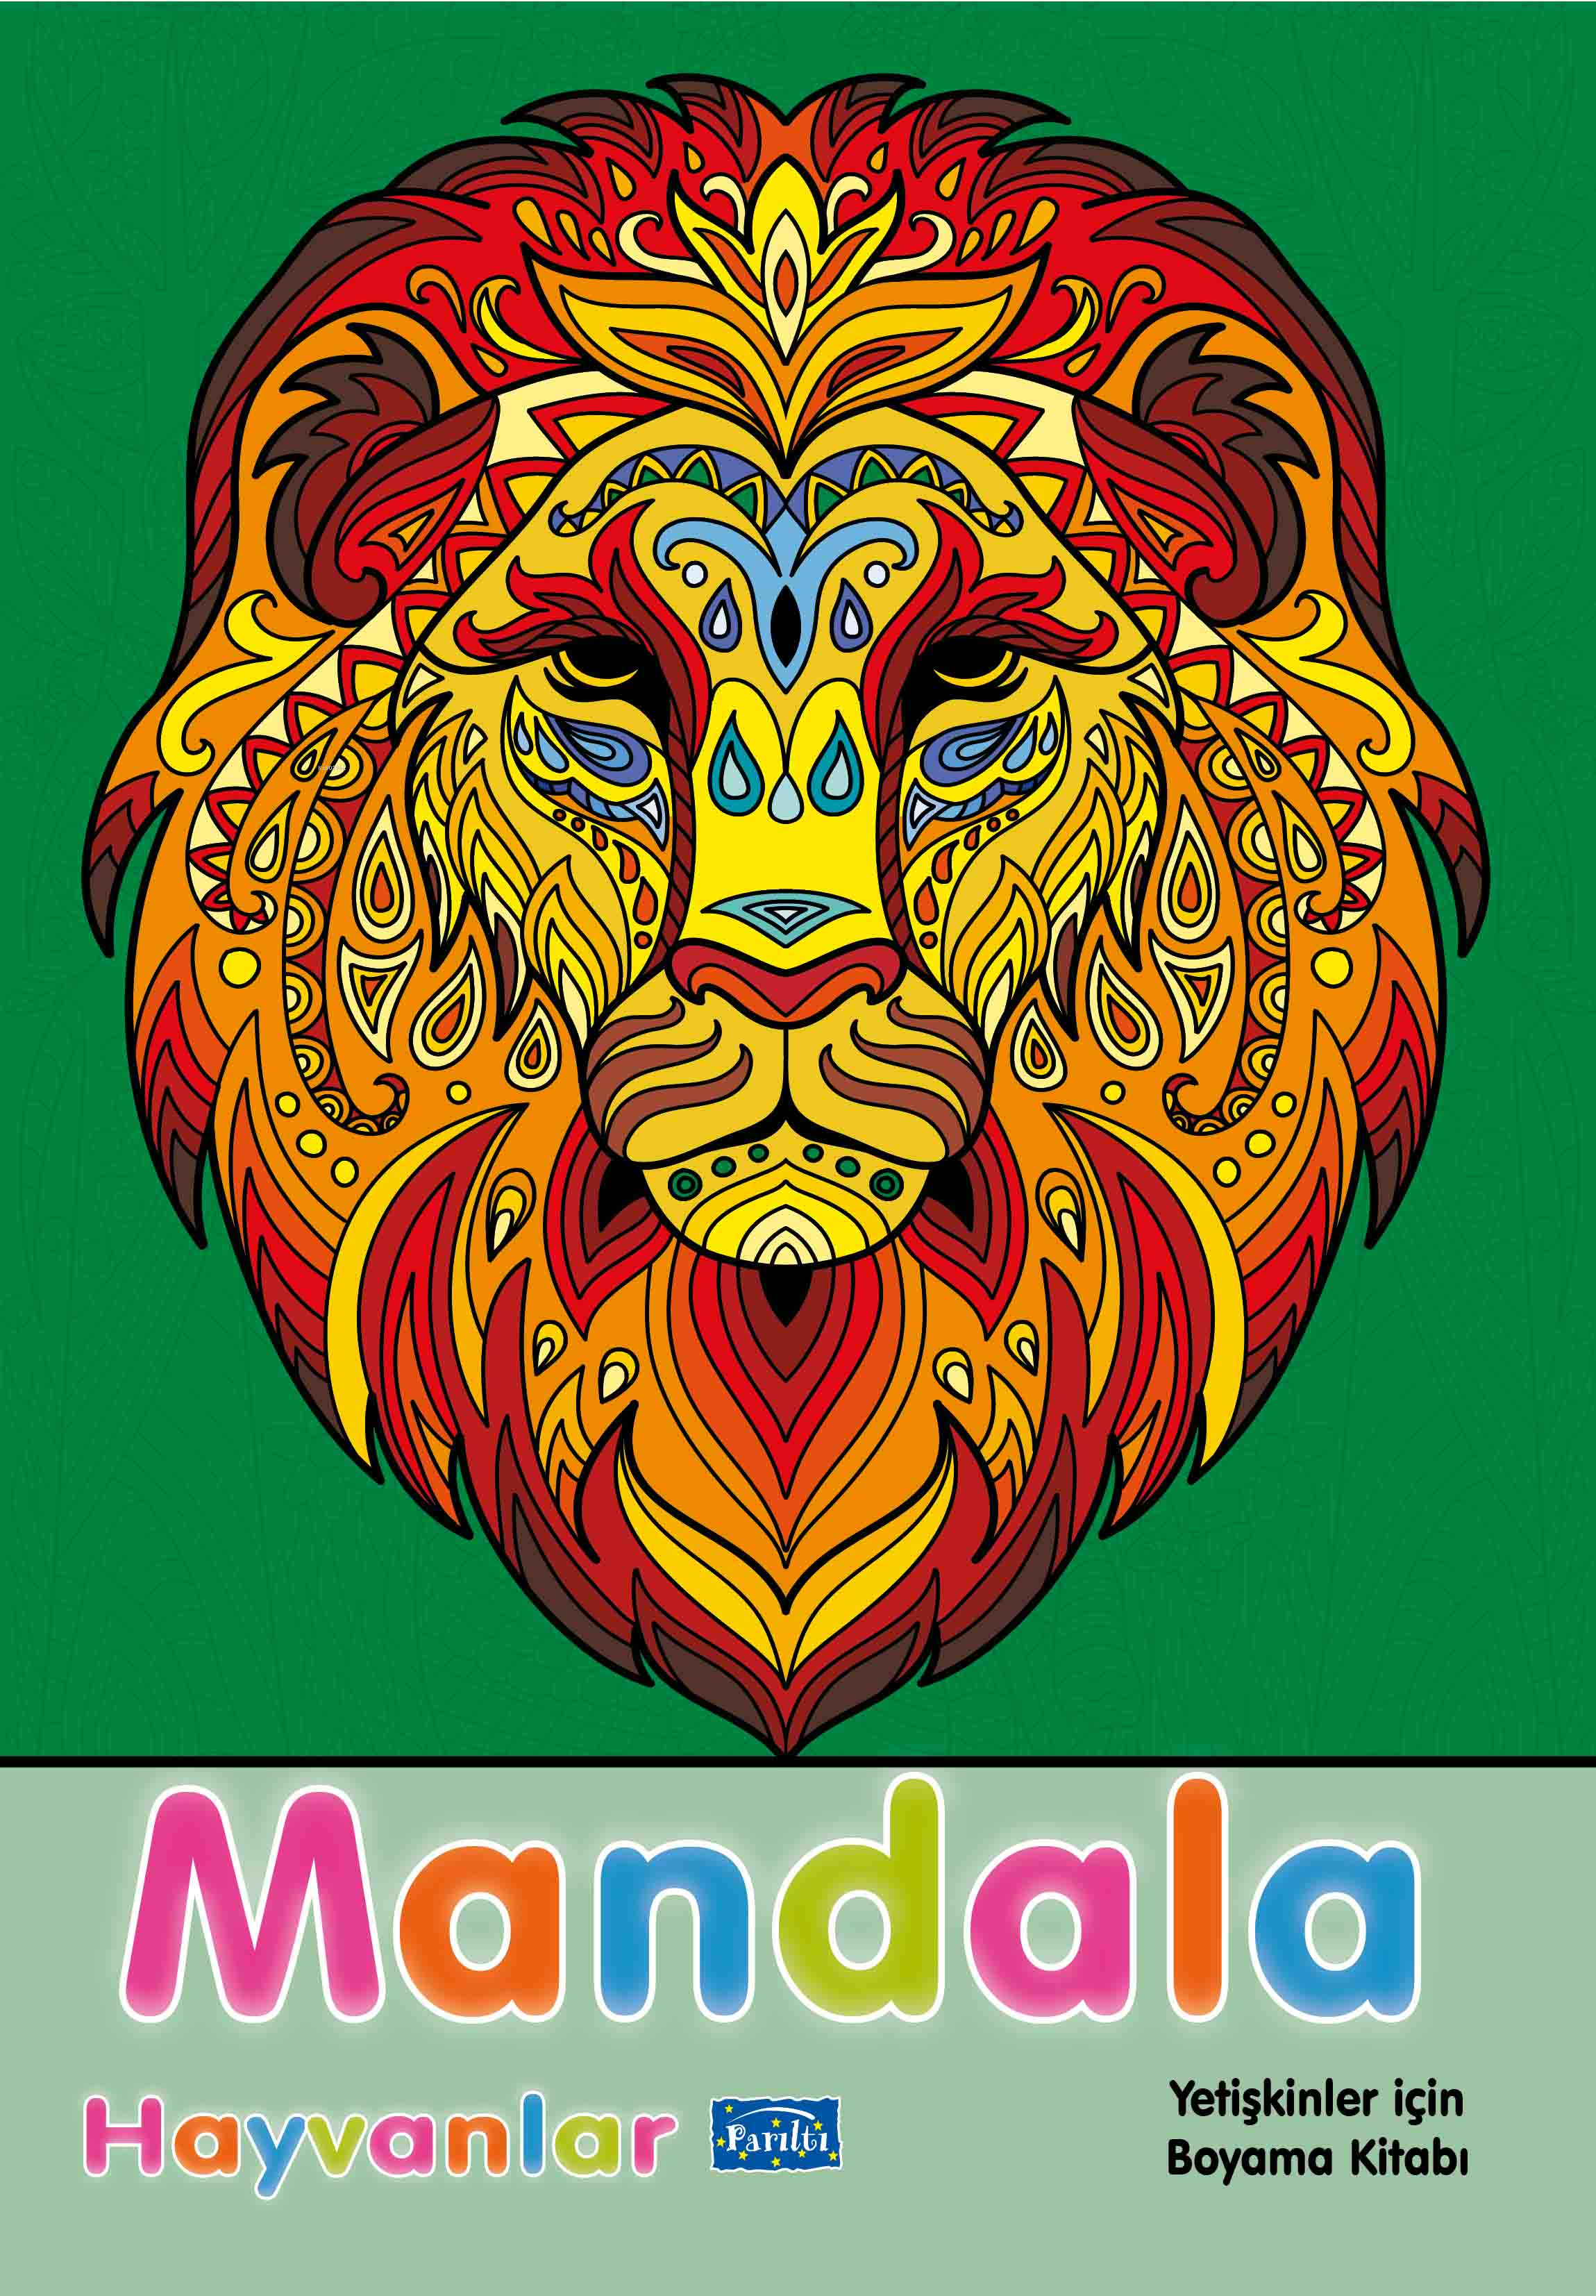 Mandala - Hayvanlar;Yetişkinler İçin Boyama Kitabı